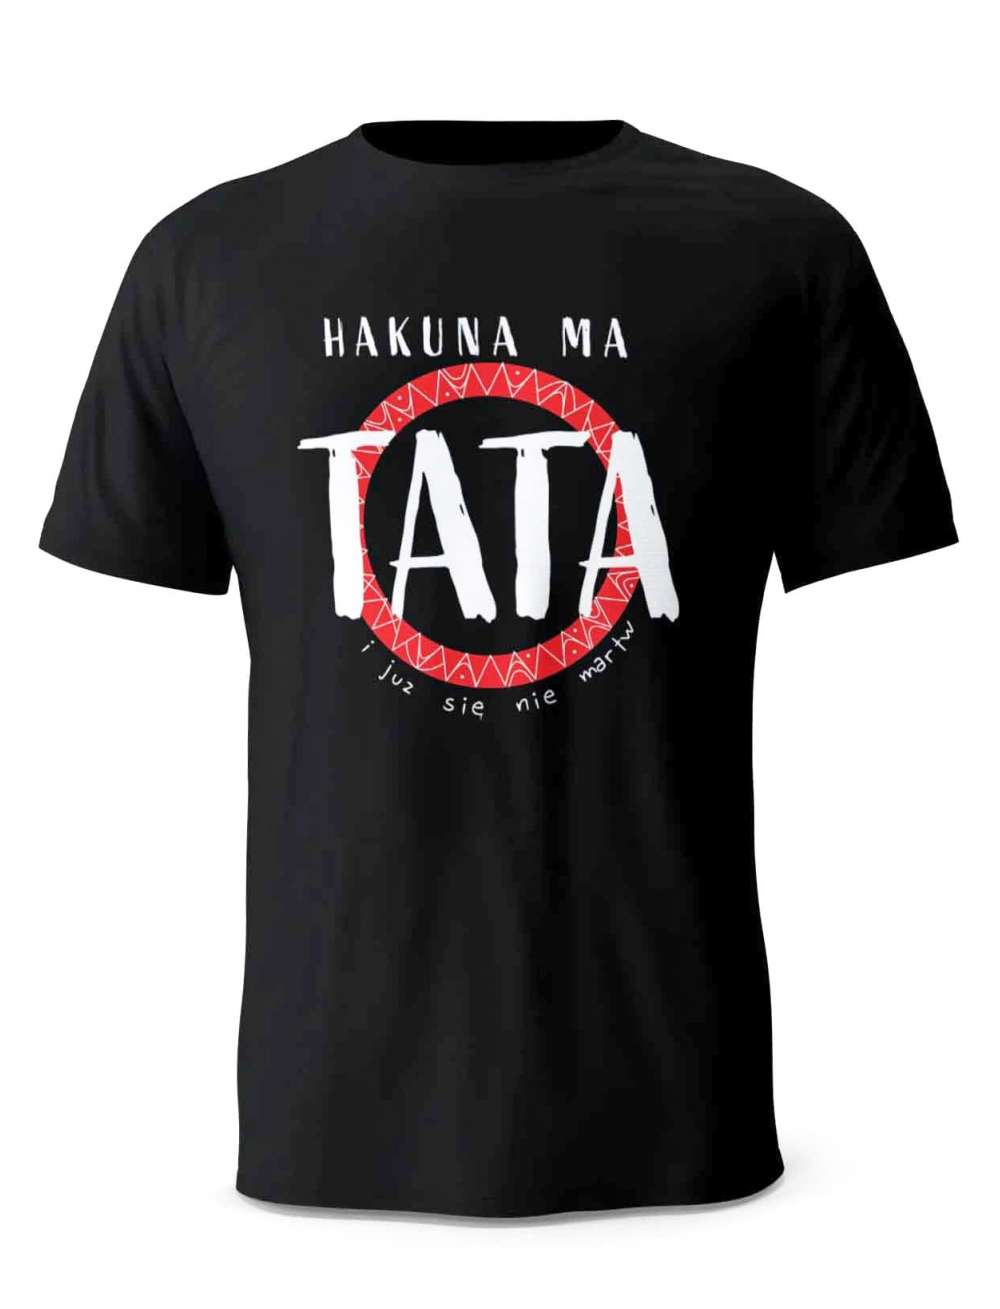 Koszulka Hakuna Ma Tata Czerowy, T-shirt dla Taty